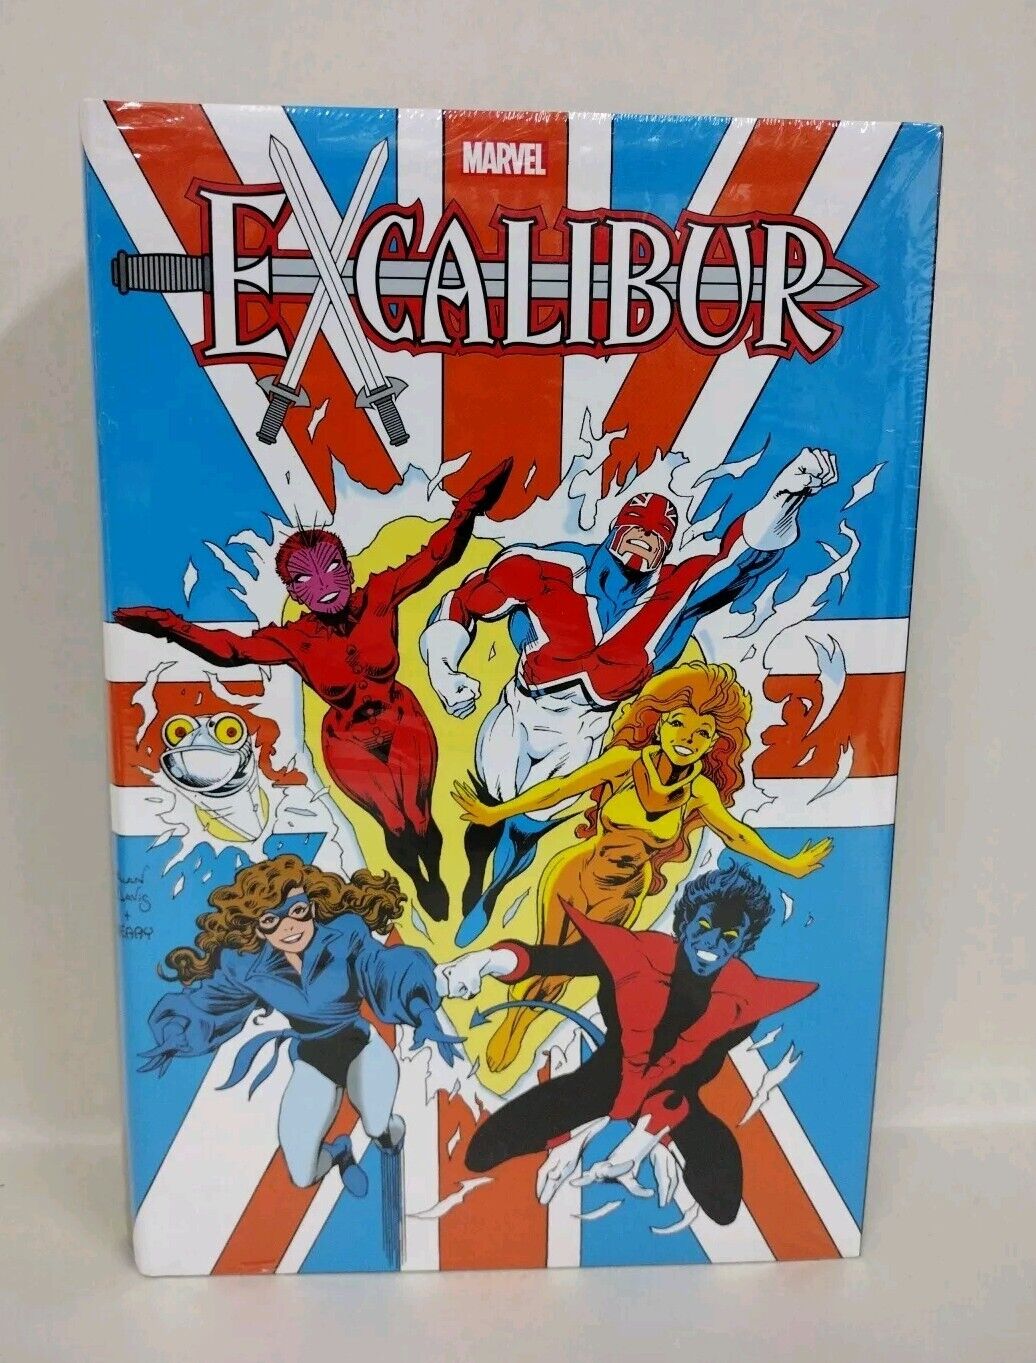 Excalibur Omnibus Vol 1 Marvel Comics Hardcover Alan Davis DM Cover New Sealed